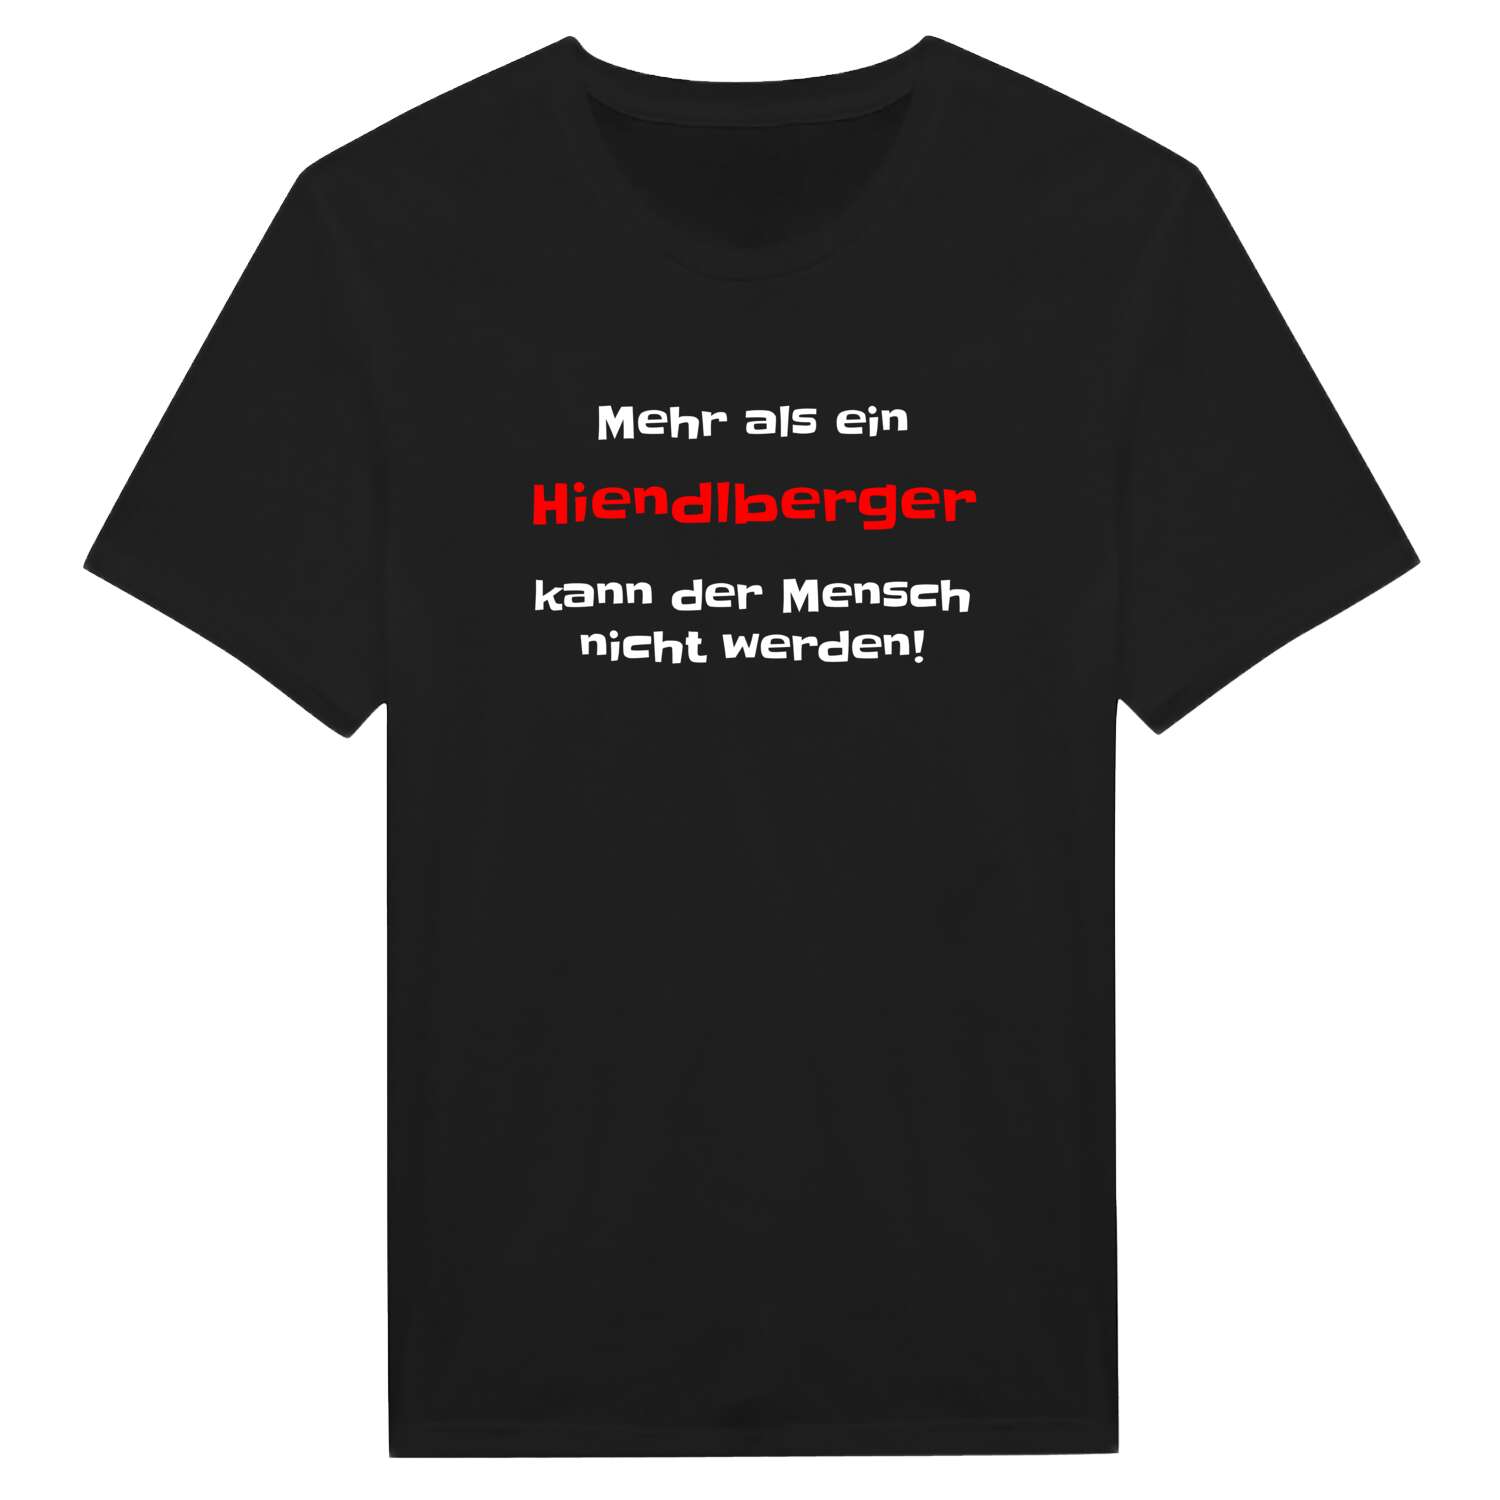 Hiendlberg T-Shirt »Mehr als ein«